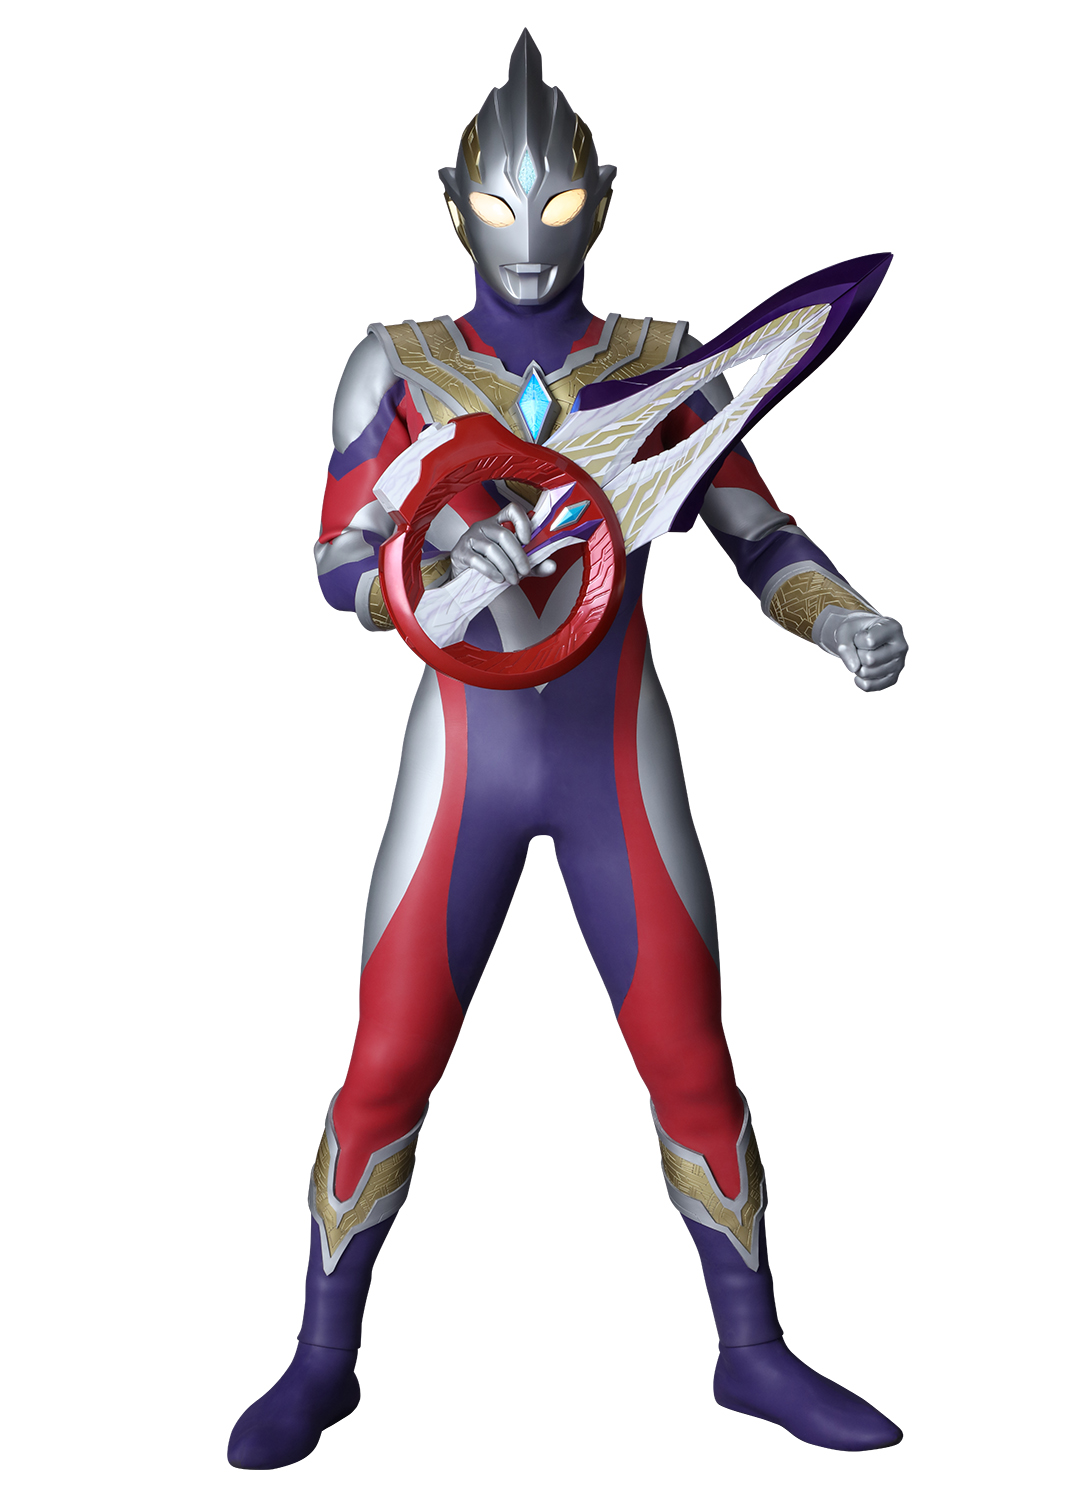 2021『特利迦奥特曼 / Ultraman Trigger』7月10日开播！